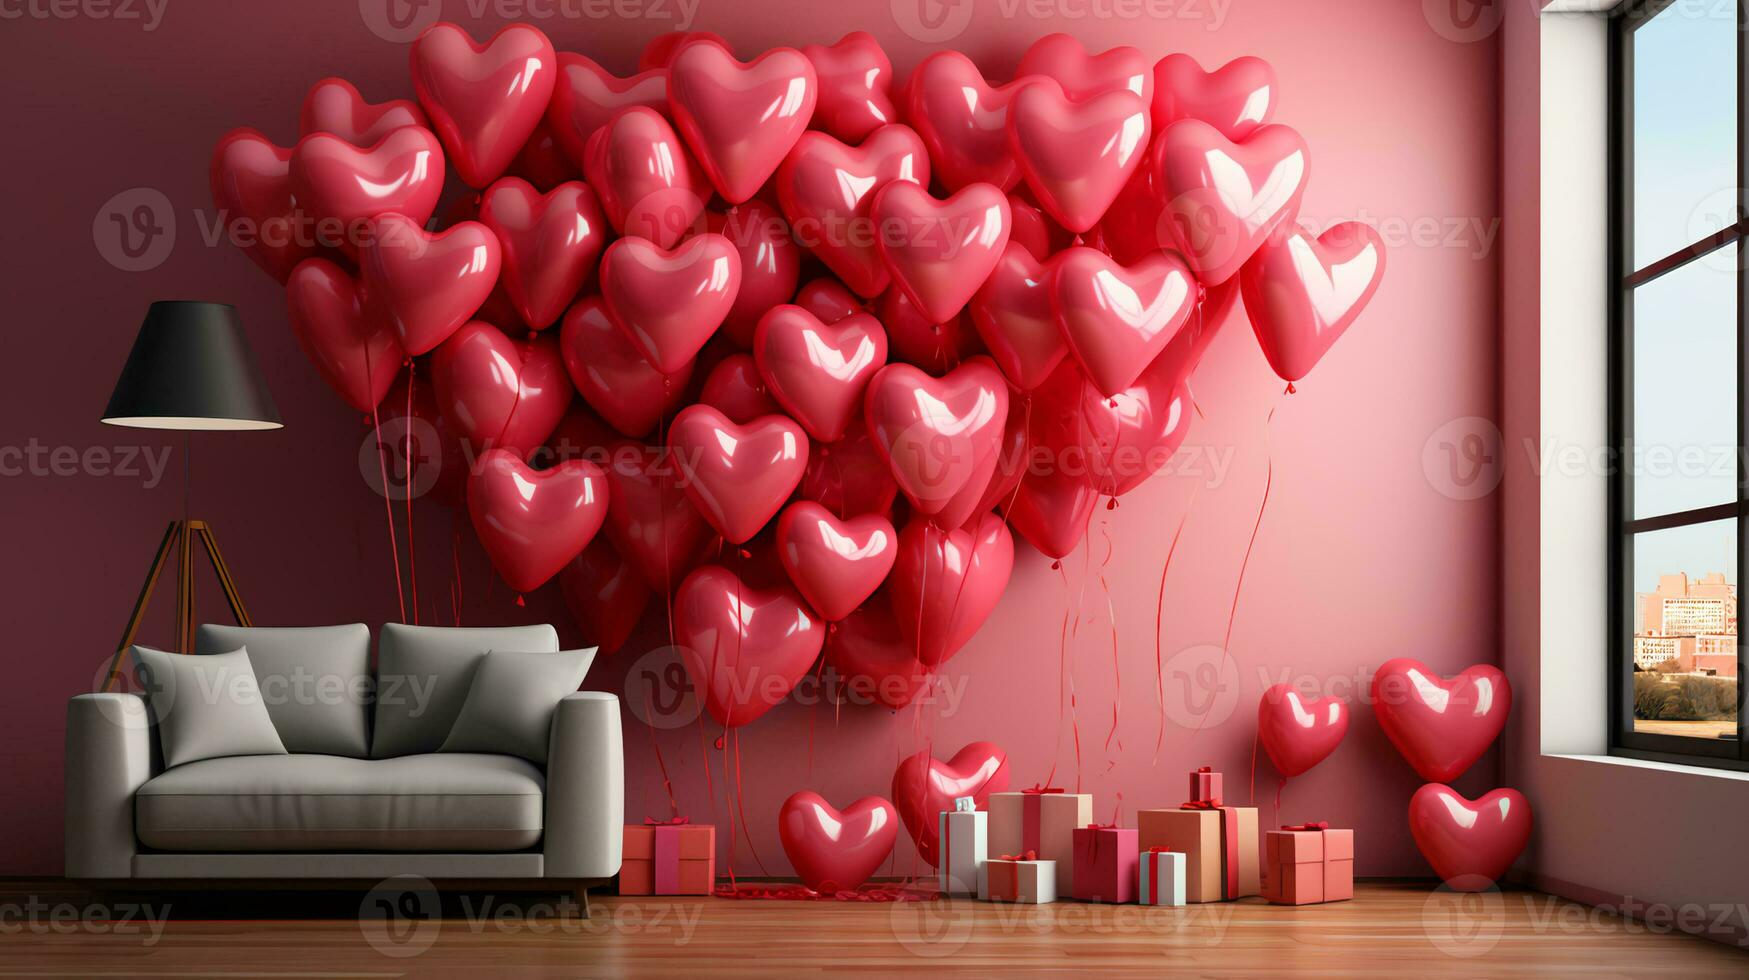 feestelijk ballon liefde ballonnen decoraties voor Valentijnsdag dag foto